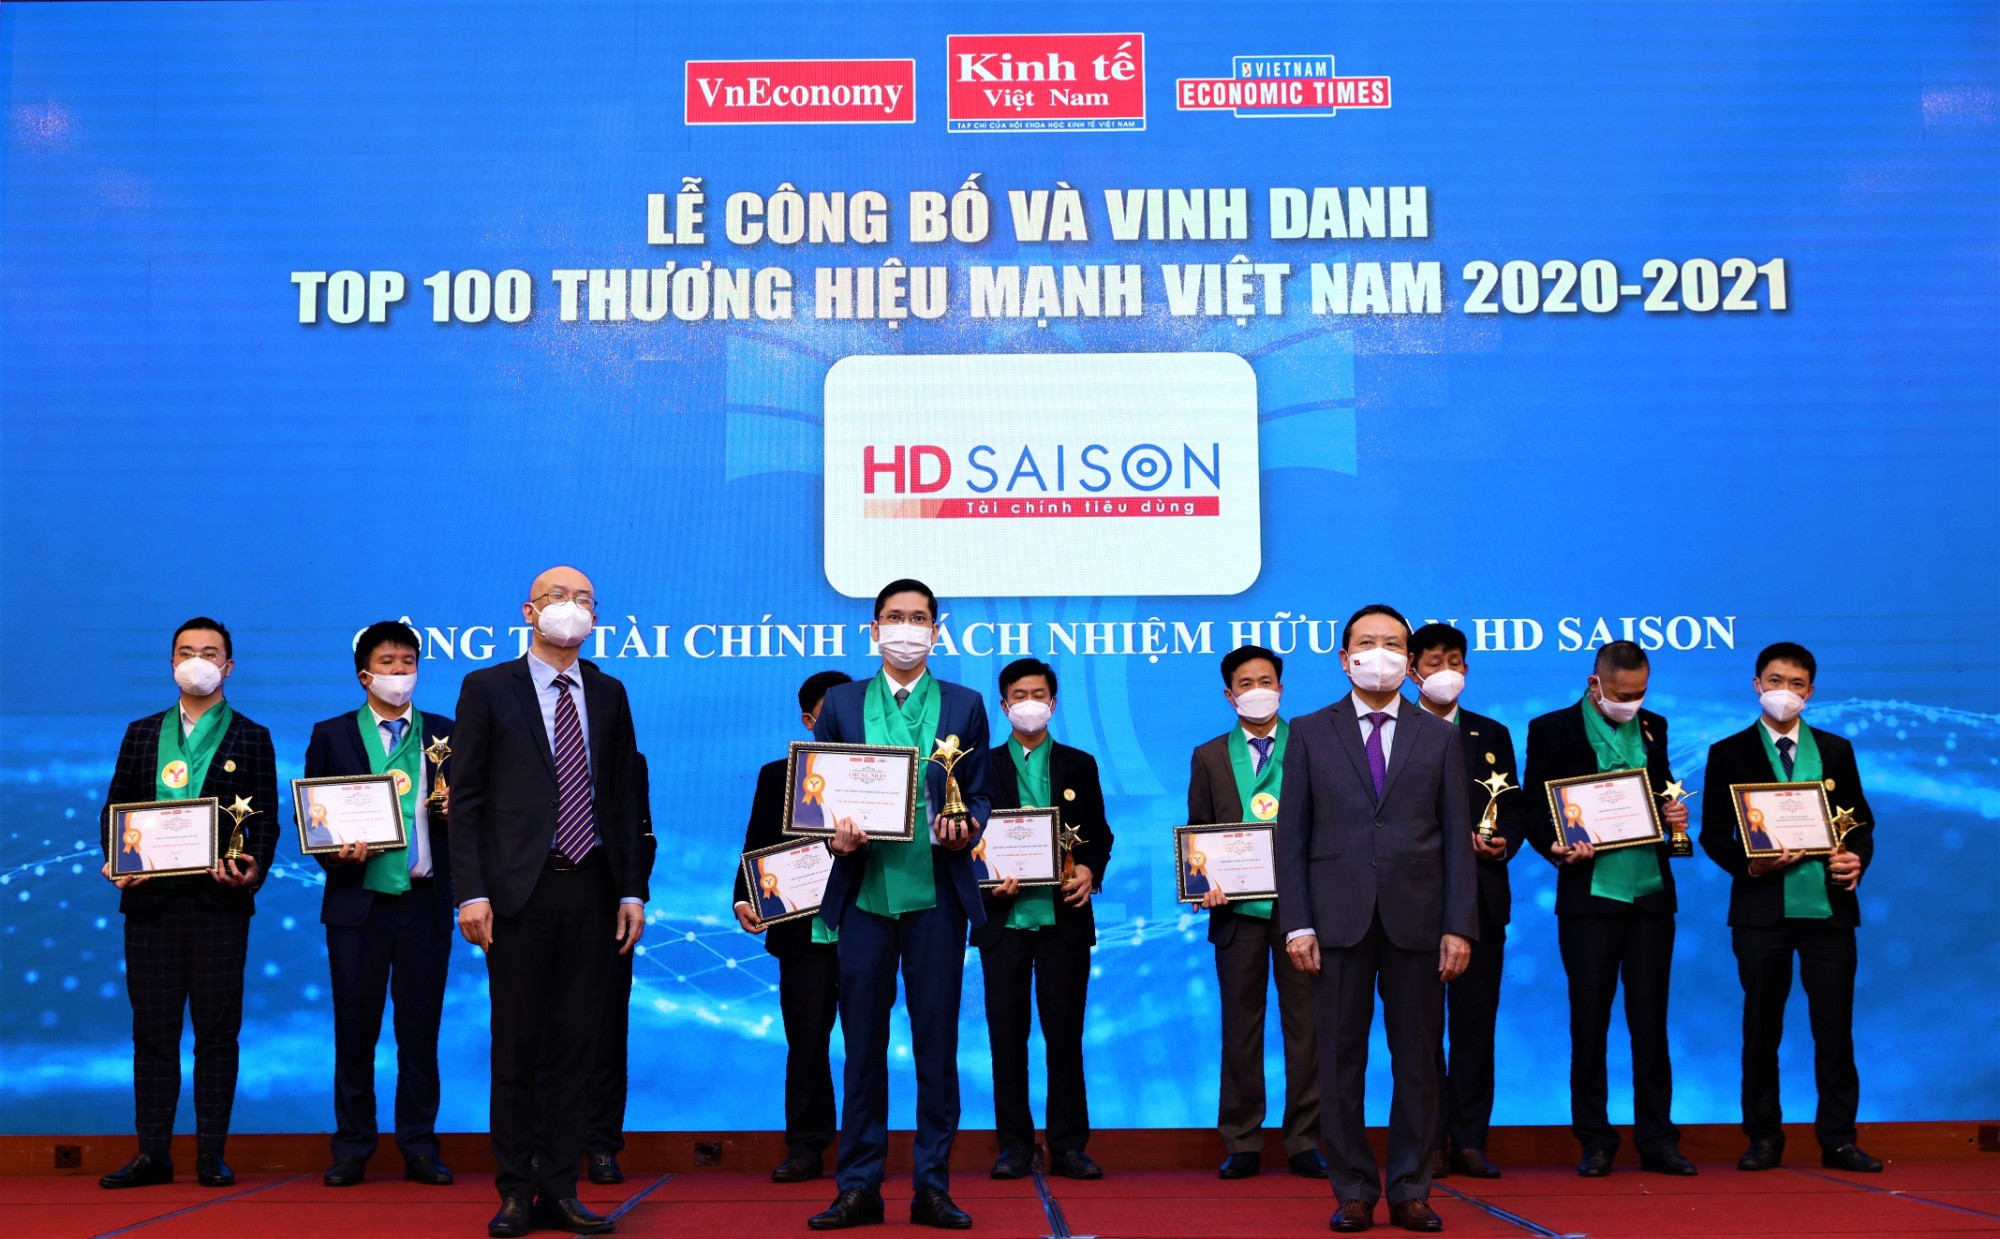 
Vào ngày 12/10/2021, HD Saison đã được vinh danh là thương hiệu mạnh Việt Nam
